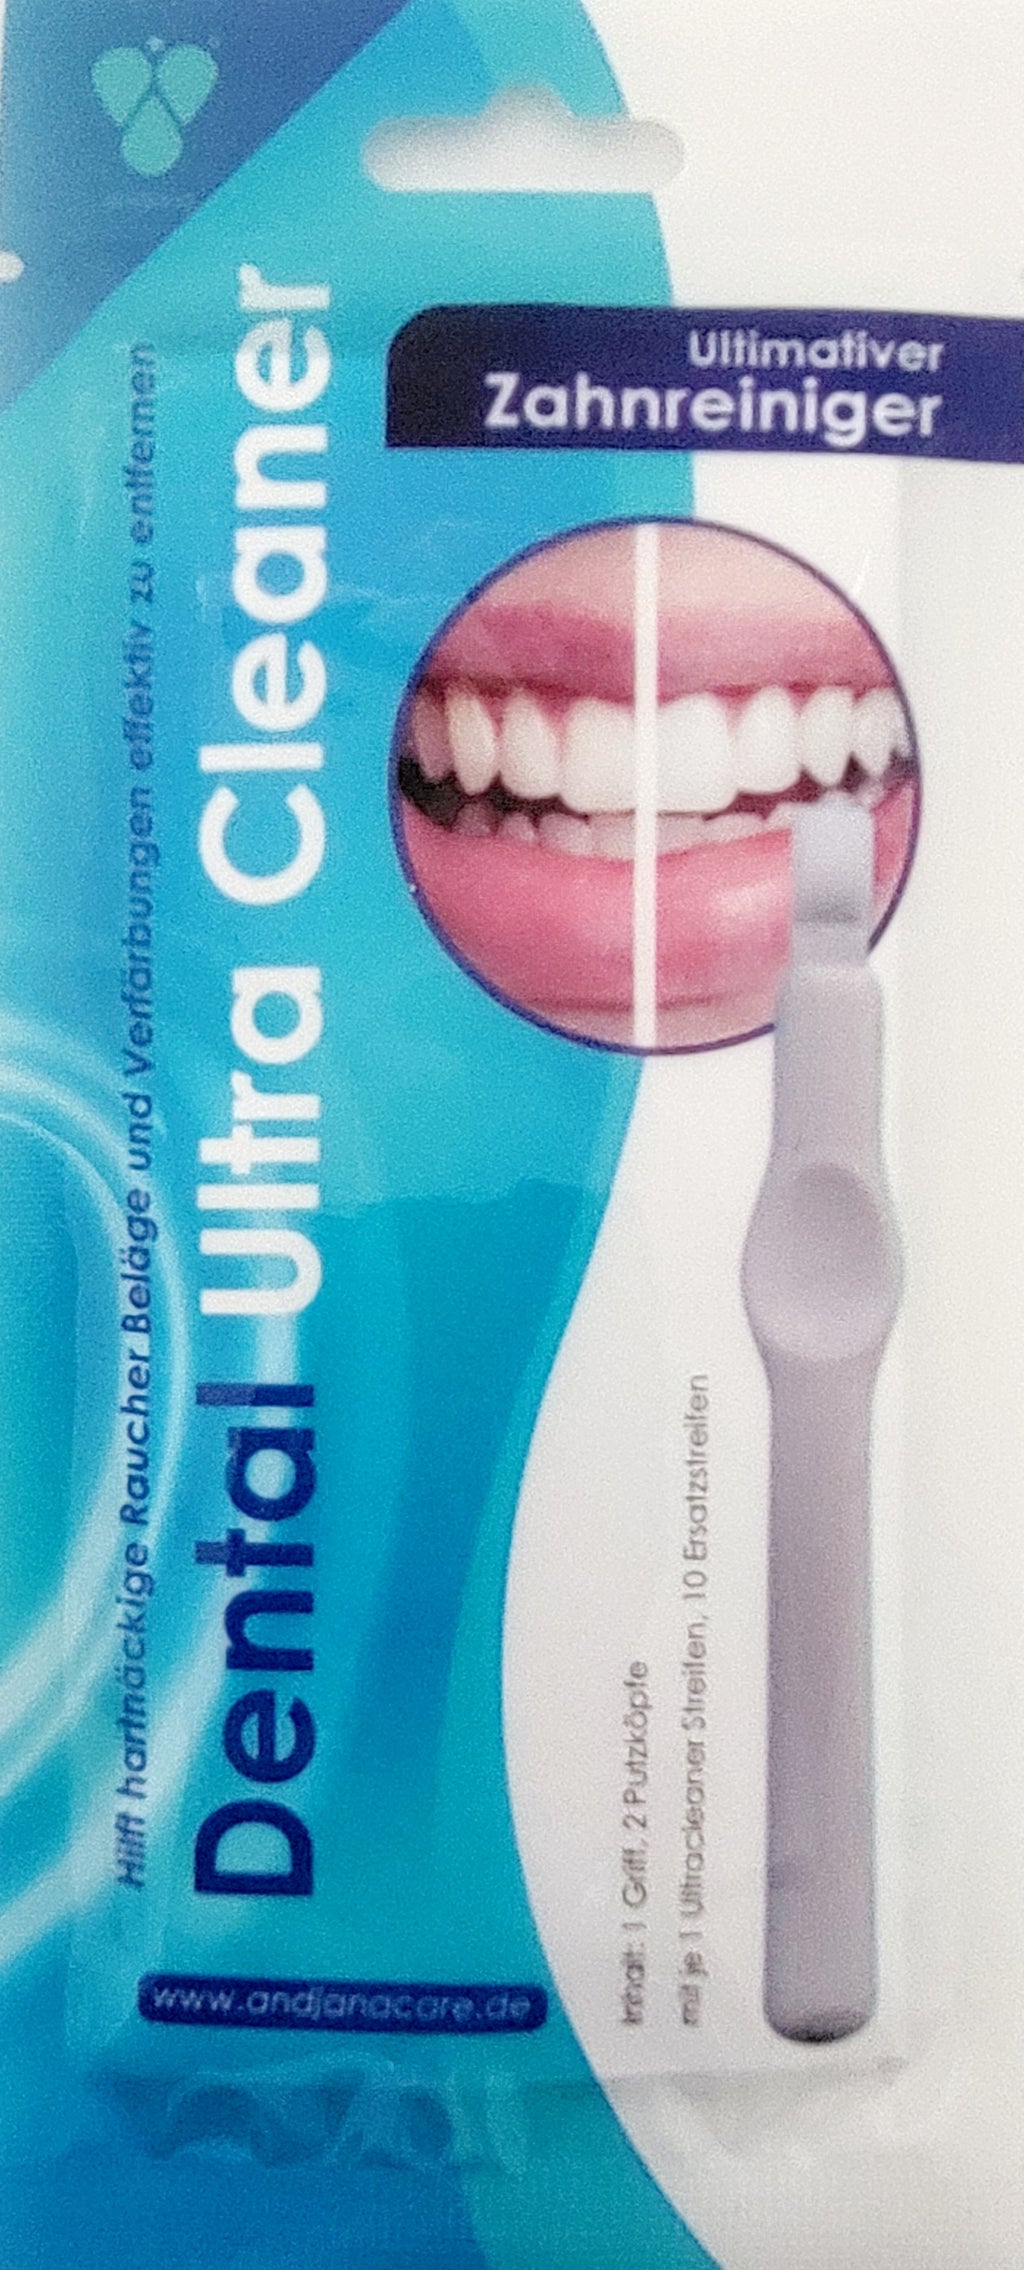 Der NEUE Dental Ultracleaner! Reinigen Sie Ihre Zähne jetzt "quietsch sauber", wie nach einer Zahnreinigung.